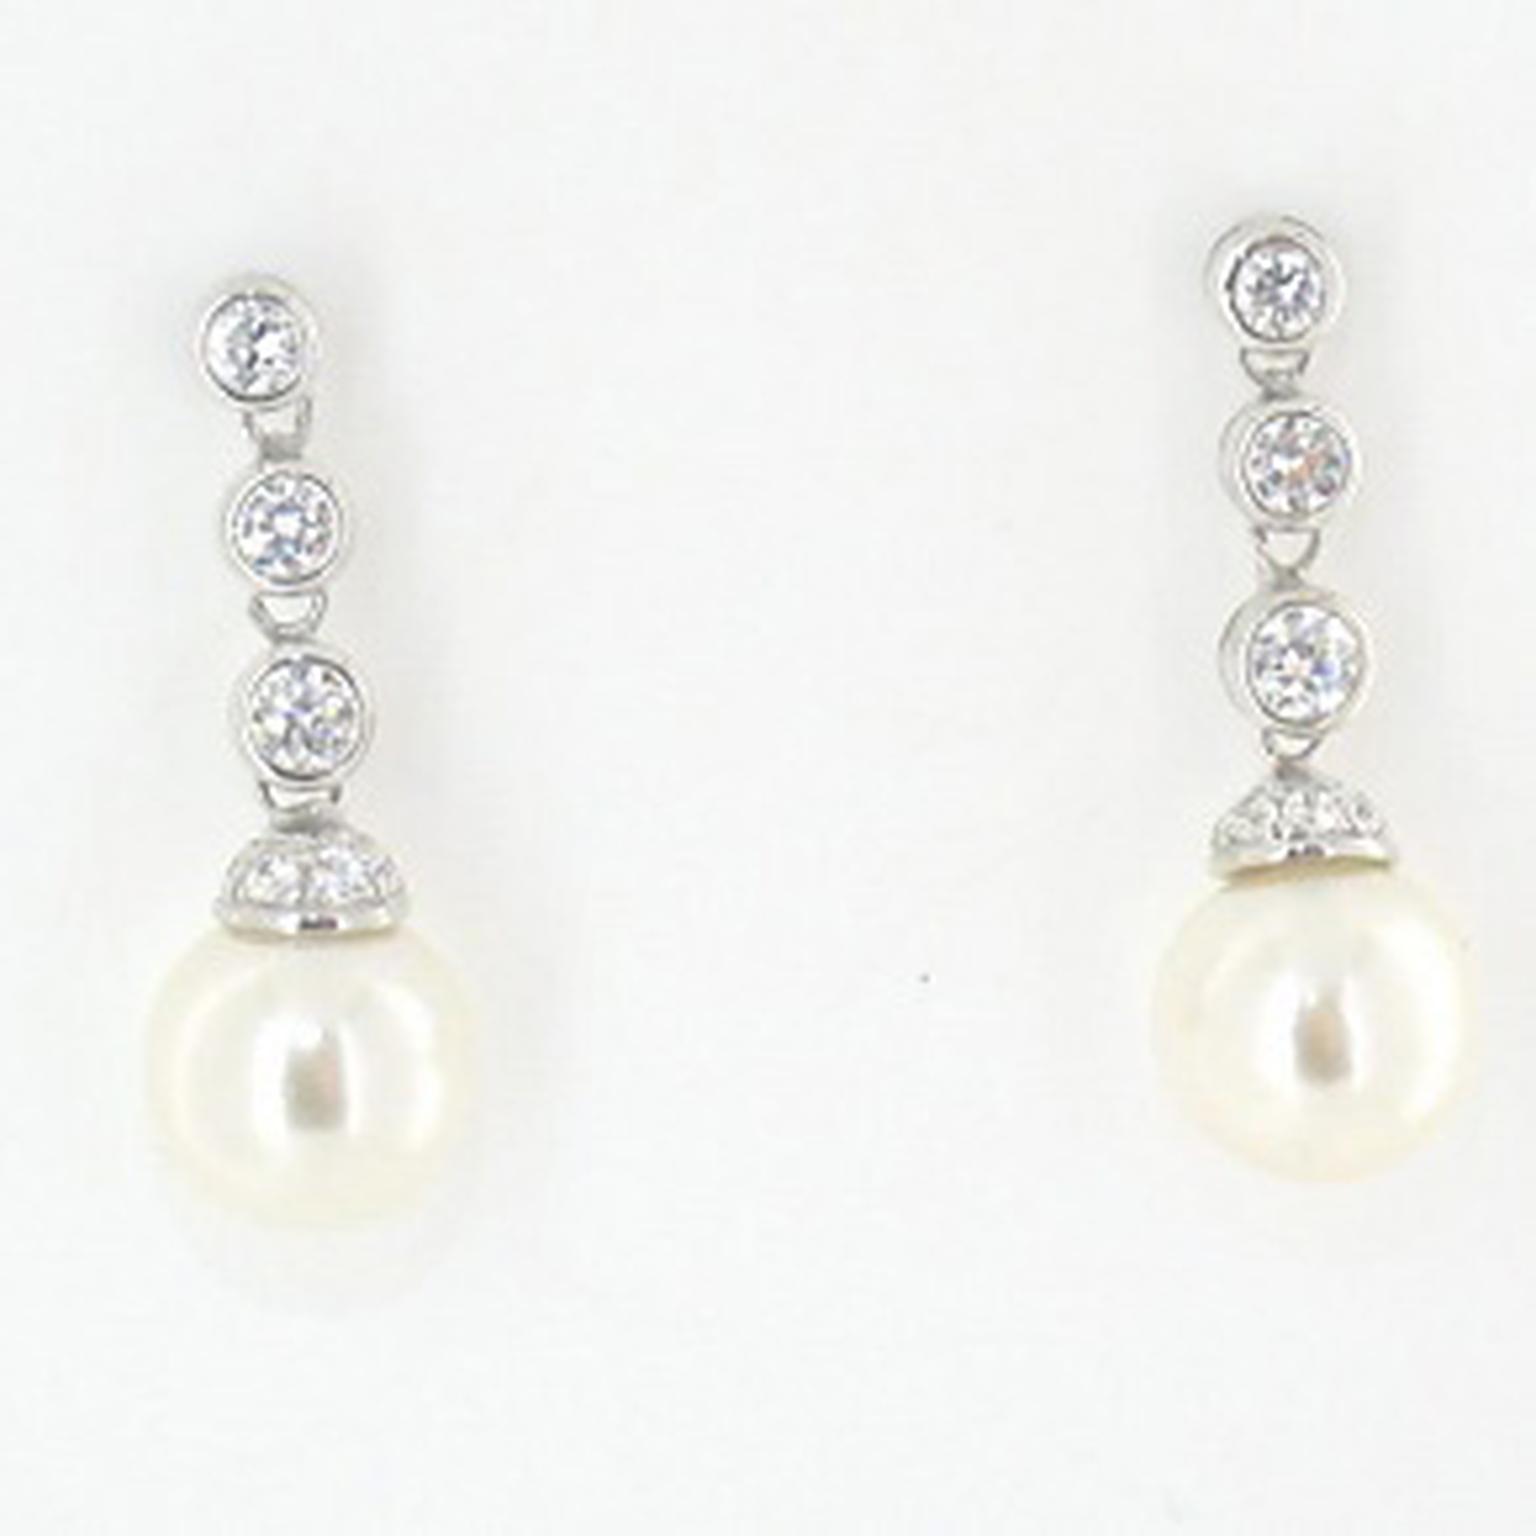 kate-Middleton-fake-diamond-earrings-man-made-diamond-earrings.jpg